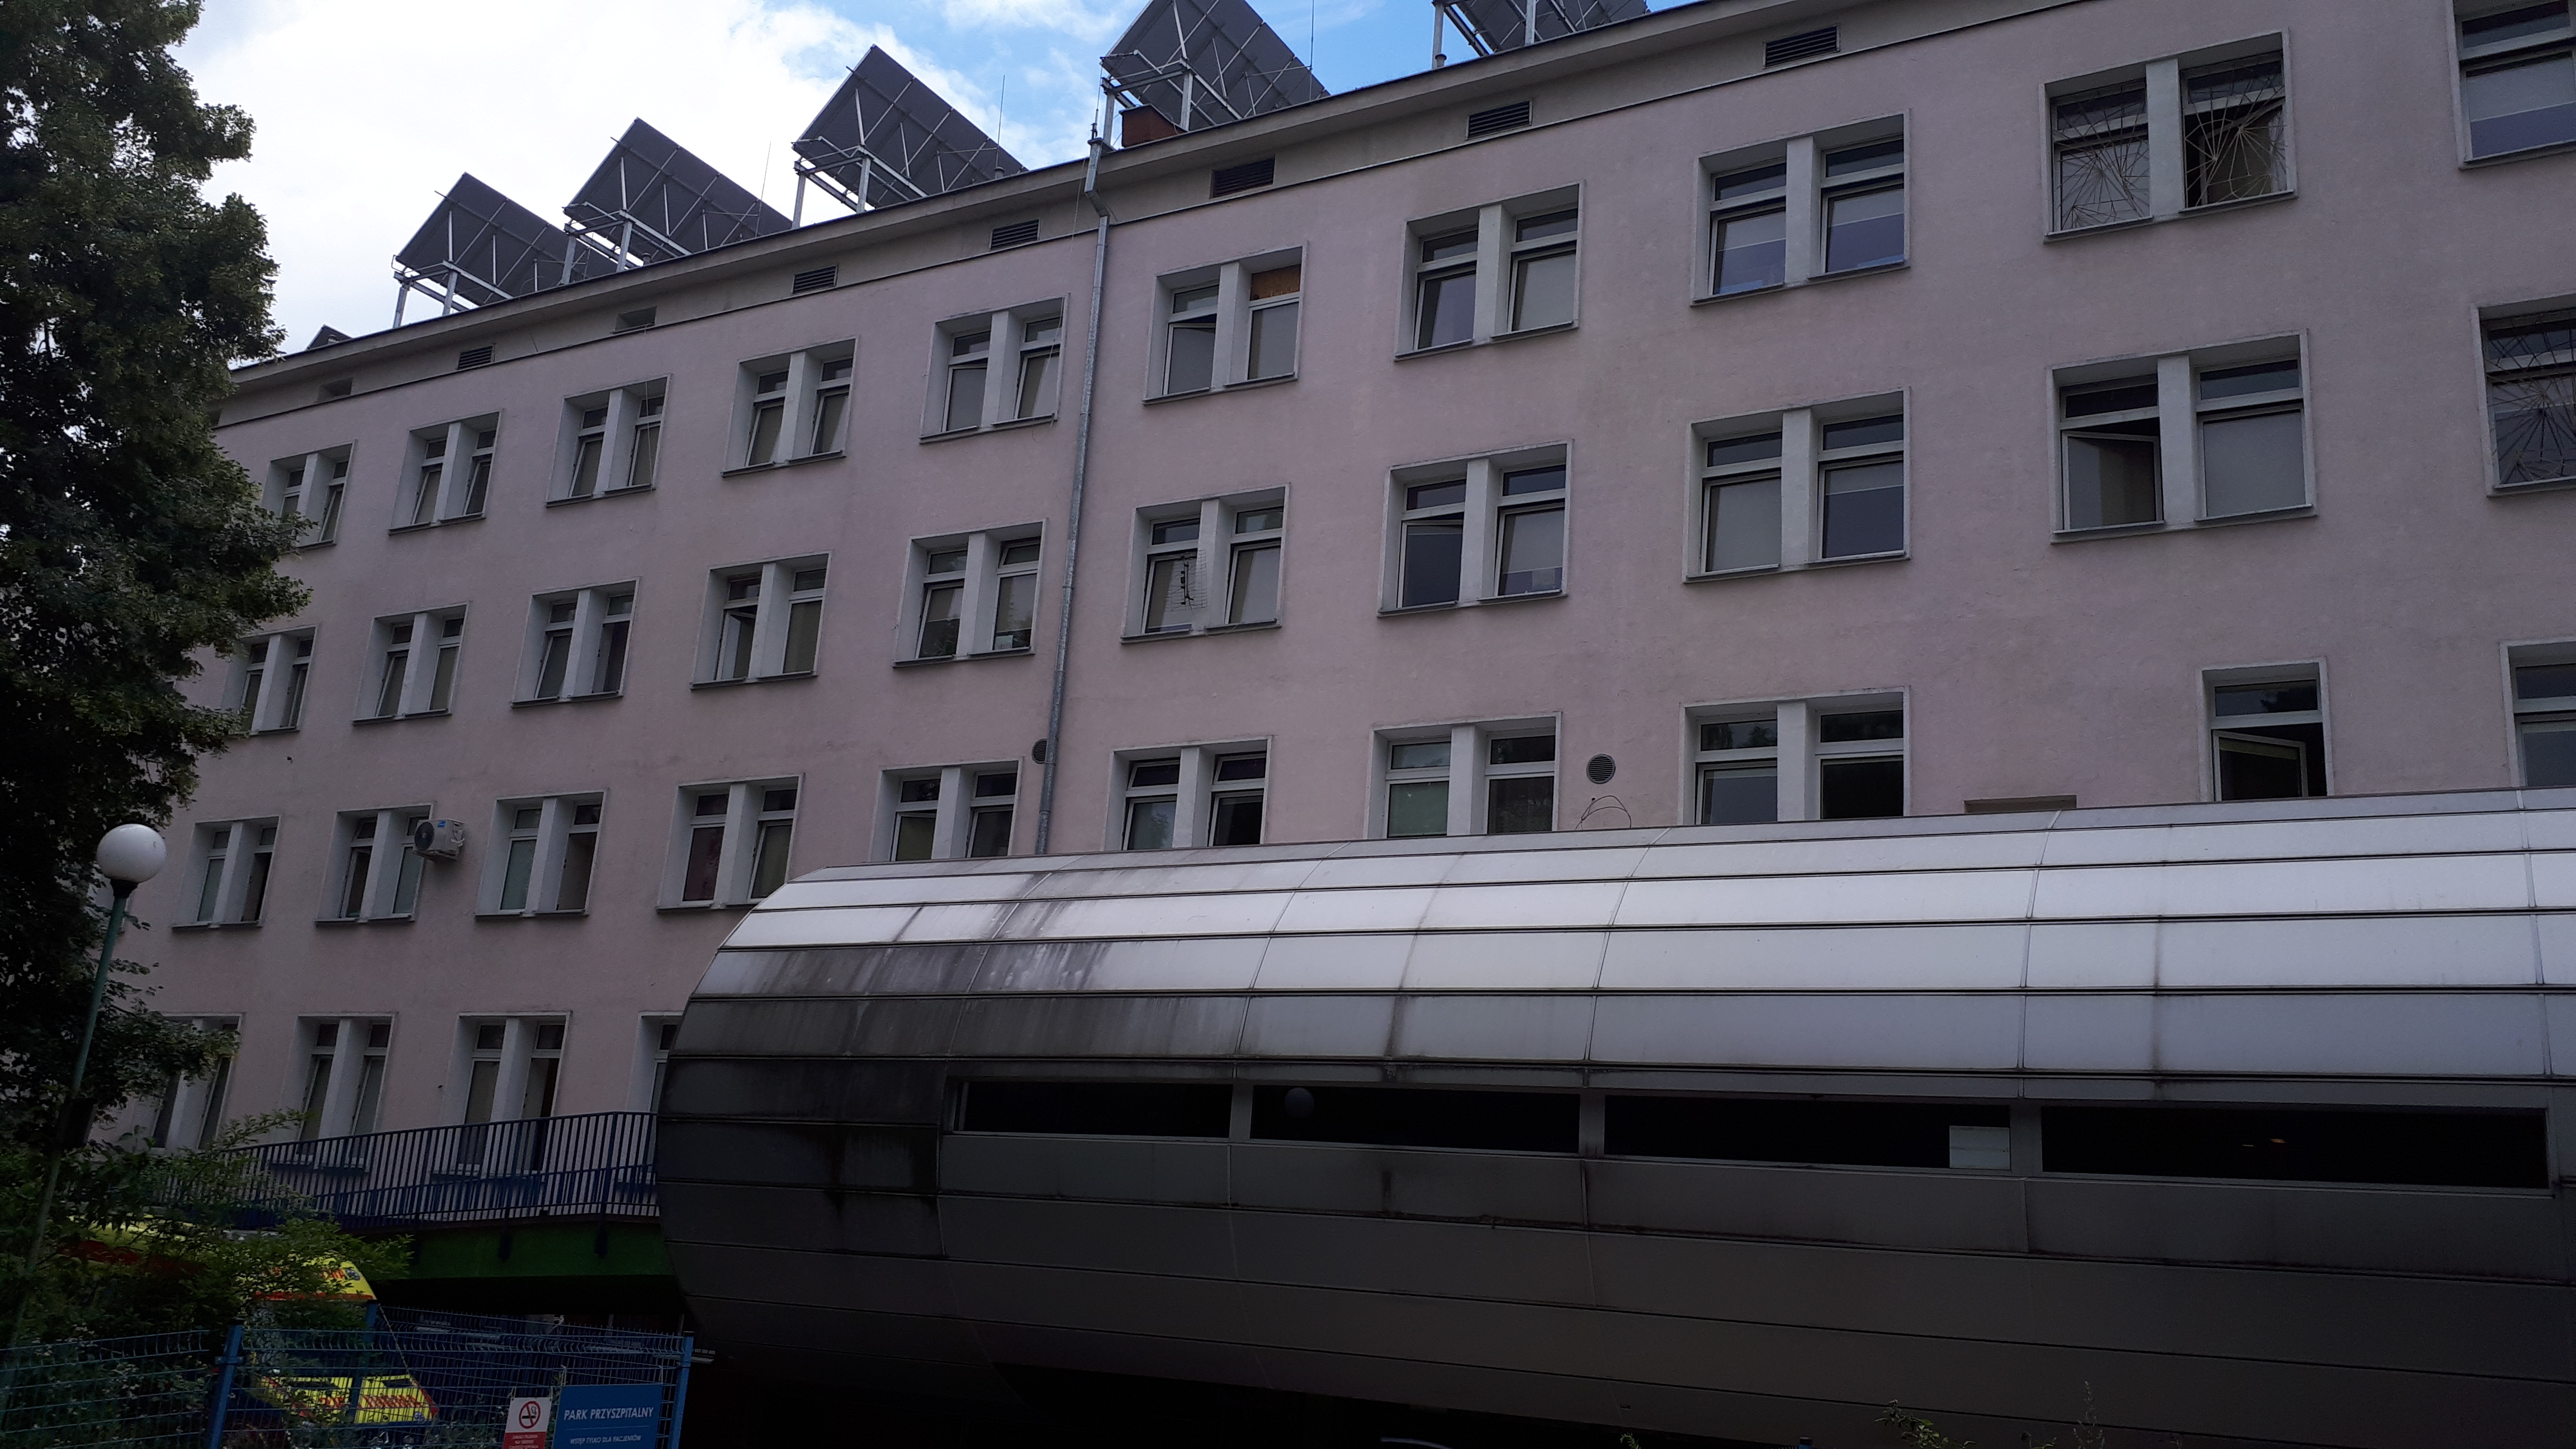 Wykonanie dokumentacji projektowo-kosztorysowej dla rozbudowy i przebudowy istniejącego budynku Szpitala przy ul. Barskiej 16/20 w Warszawie